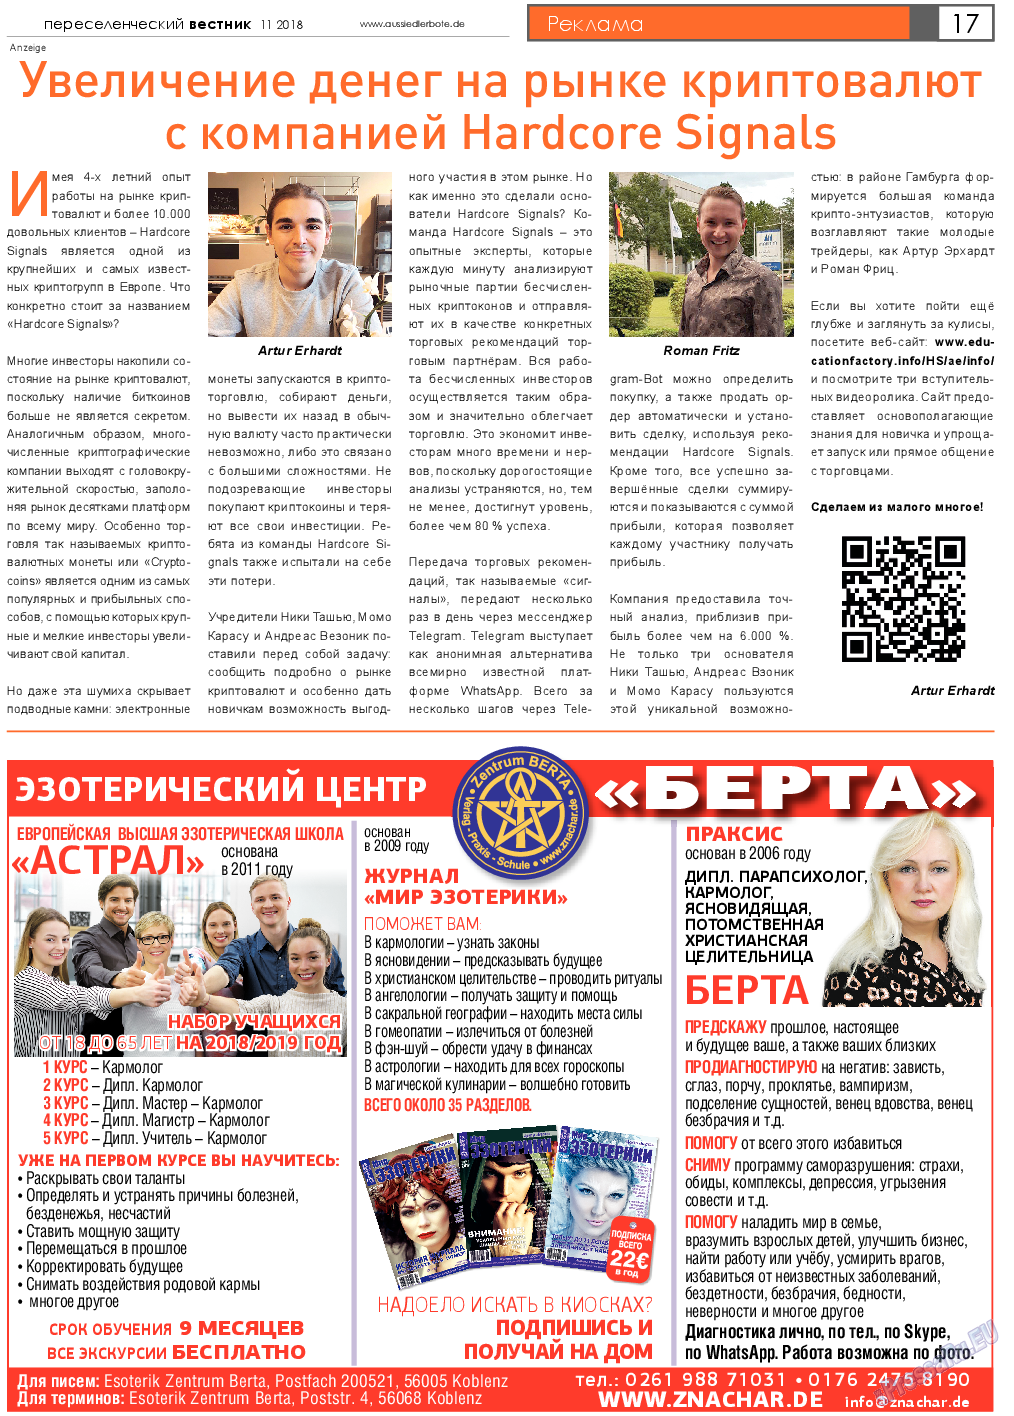 Переселенческий вестник, газета. 2018 №11 стр.17